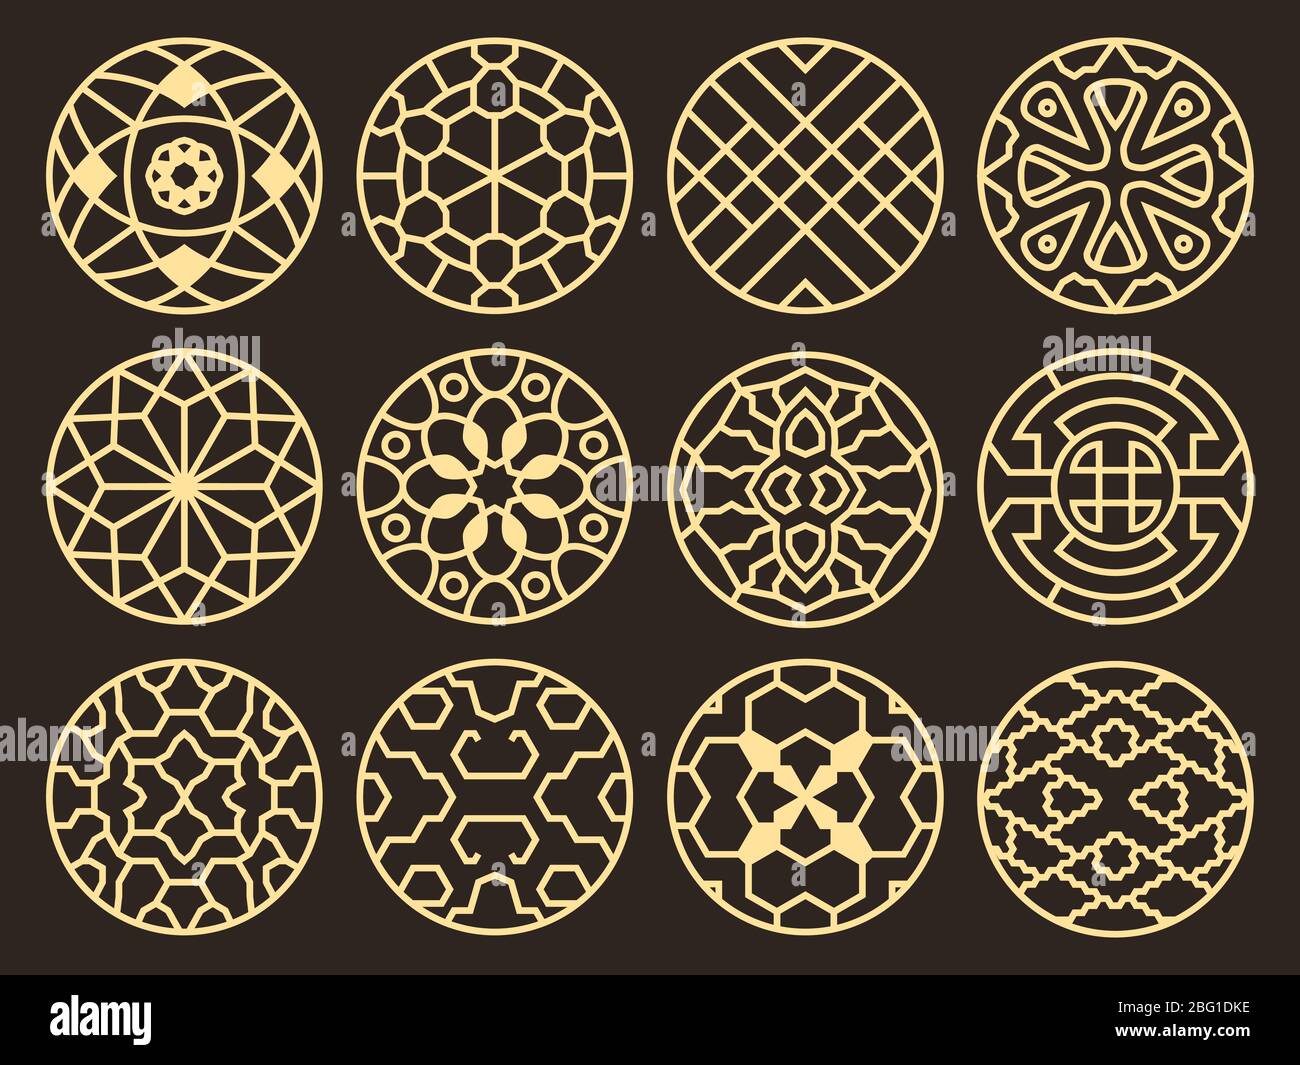 Koreanische und chinesische traditionelle Vektor alten buddhistischen Muster, Ornamente und Symbole. Asiatische runde Element Muster Tattoo, Illustration der symbolischen f Stock Vektor